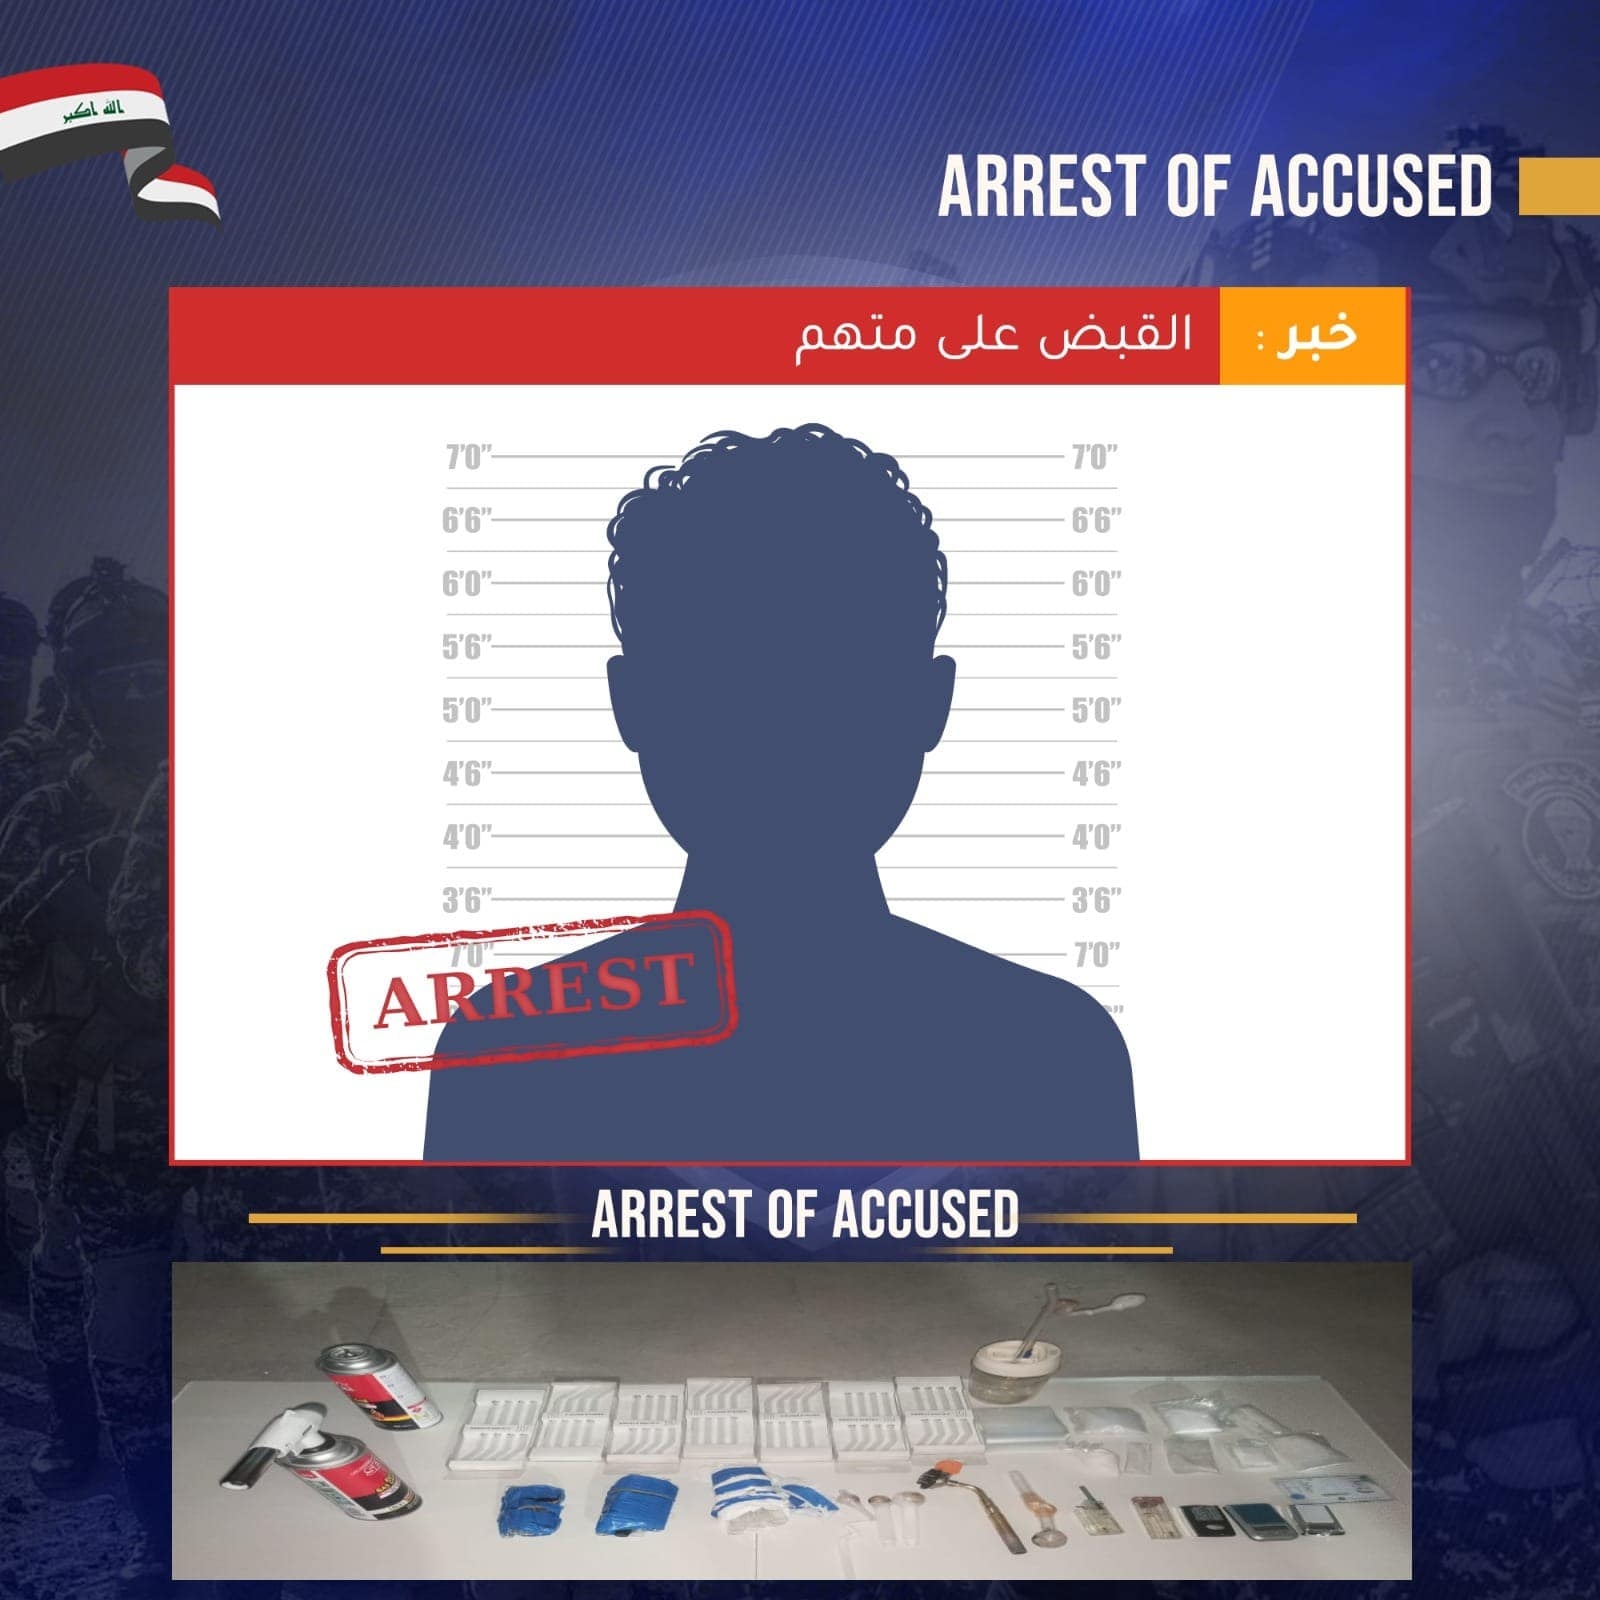 القبض على متهم وضبط مواد مخدرة شرق بغداد